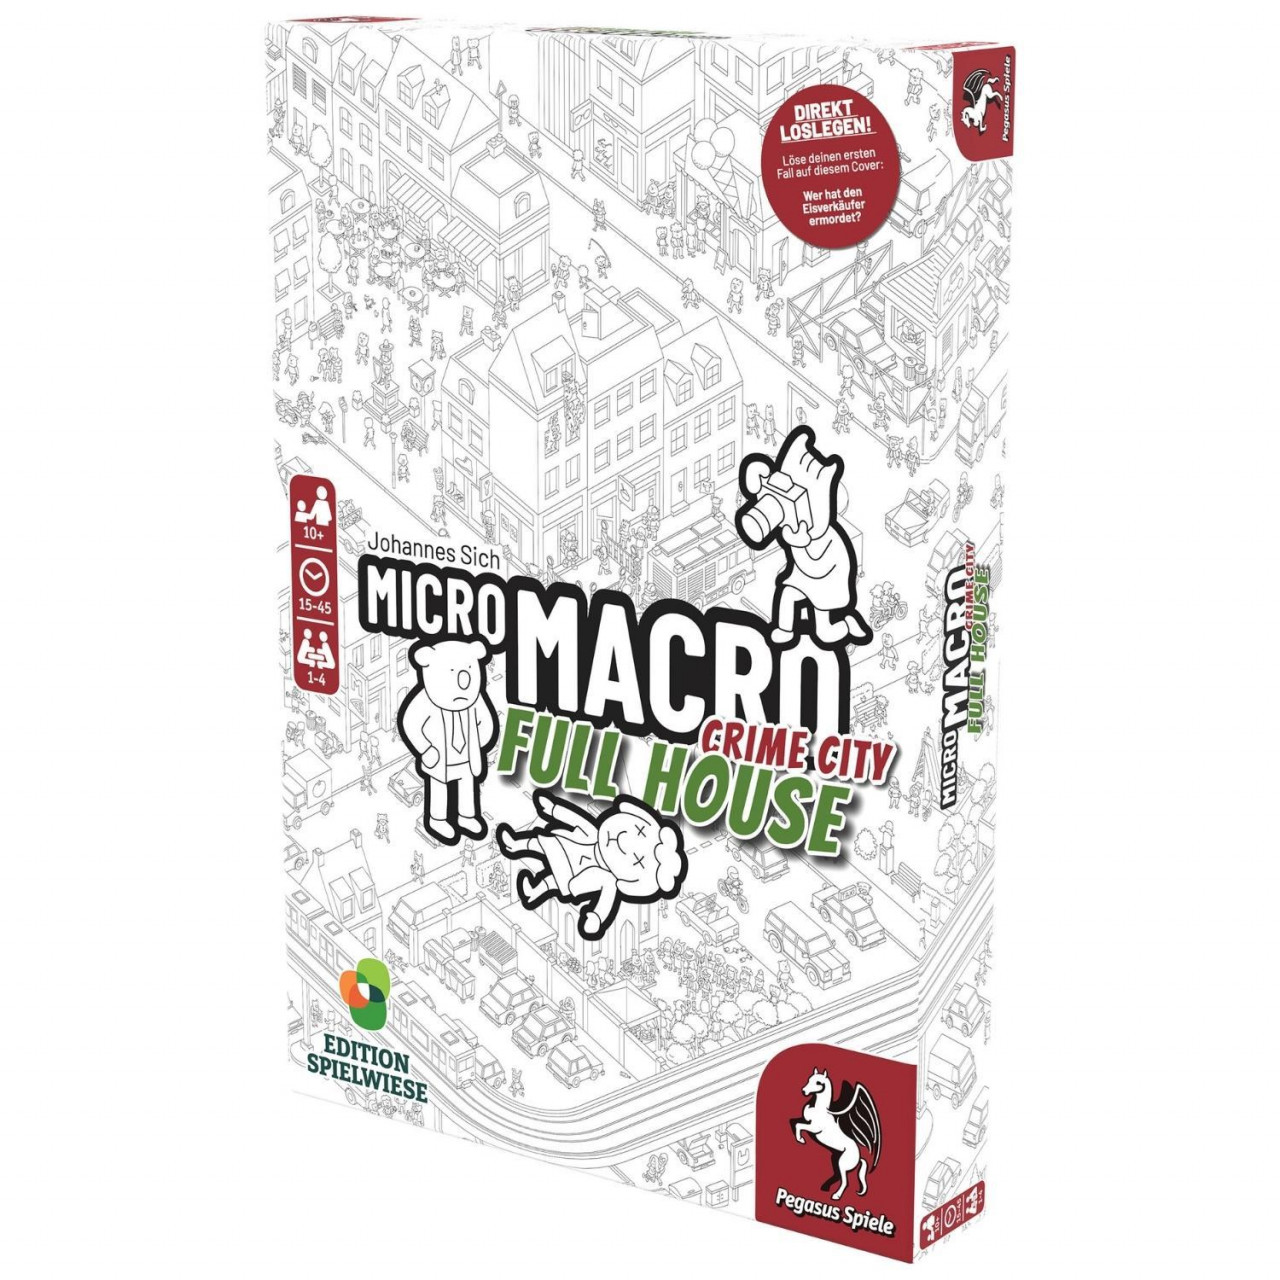 MicroMacro: Crime City 2  Full House (Edition Spielwiese)